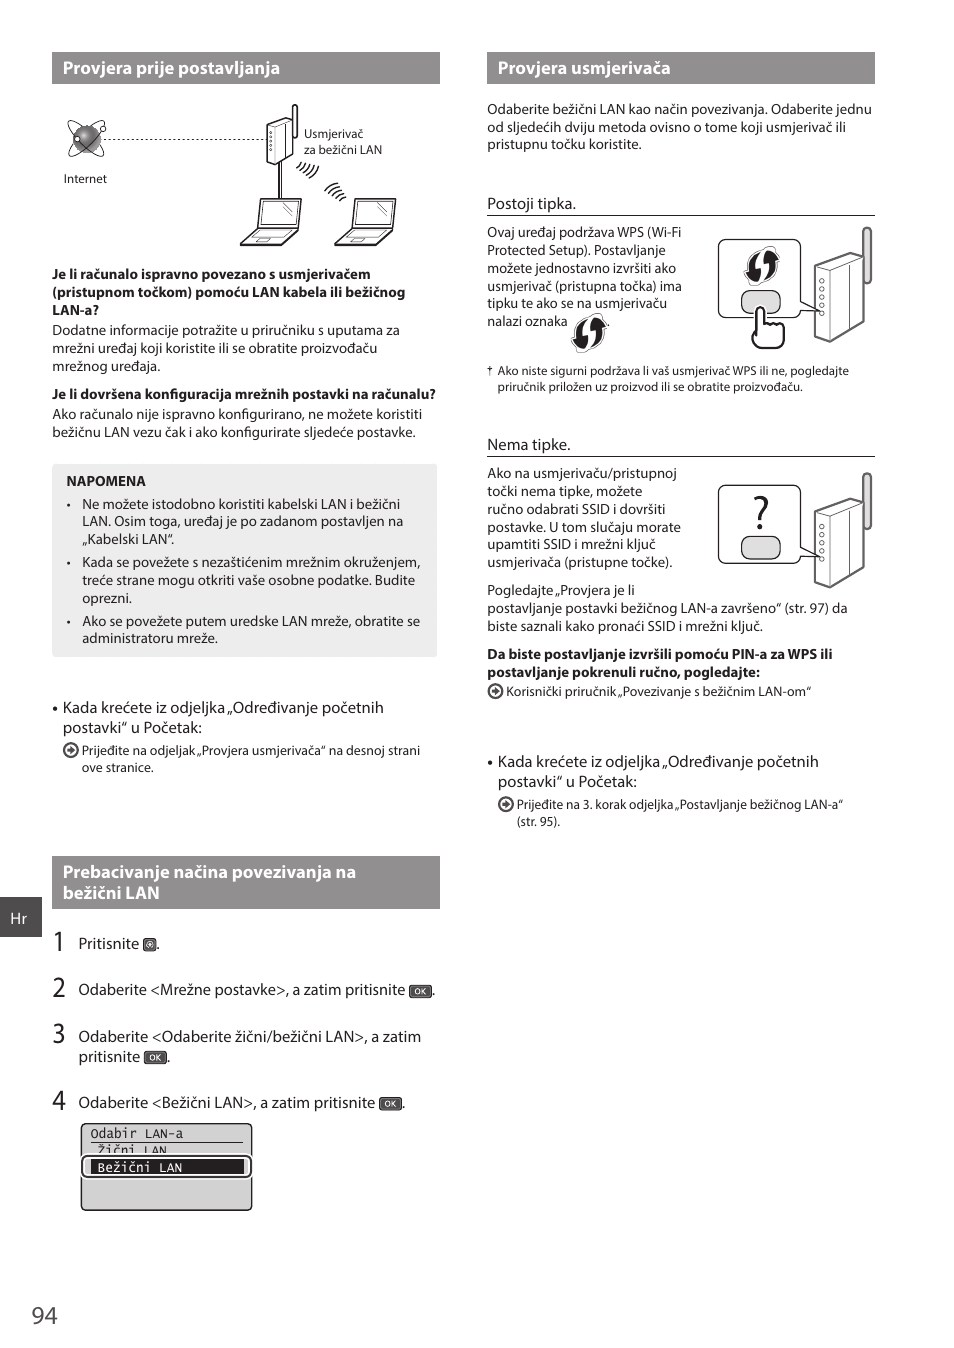 Provjera prije postavljanja, Prebacivanje načina povezivanja na bežični lan, Provjera usmjerivača | Canon i-SENSYS MF244dw User Manual | Page 94 / 124